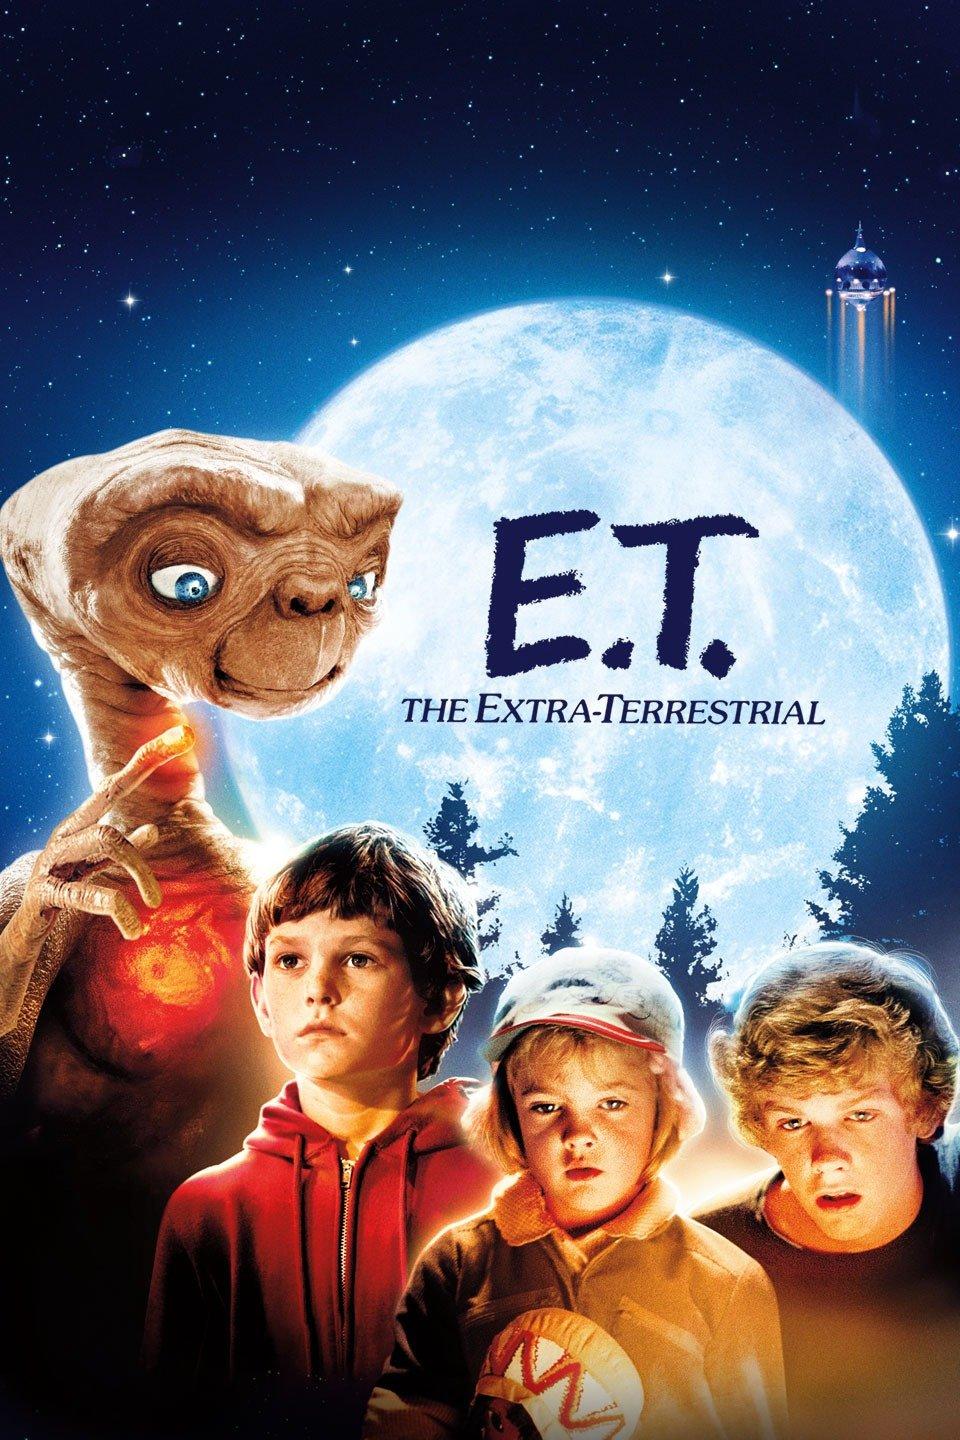 Cover Art for "E.T."